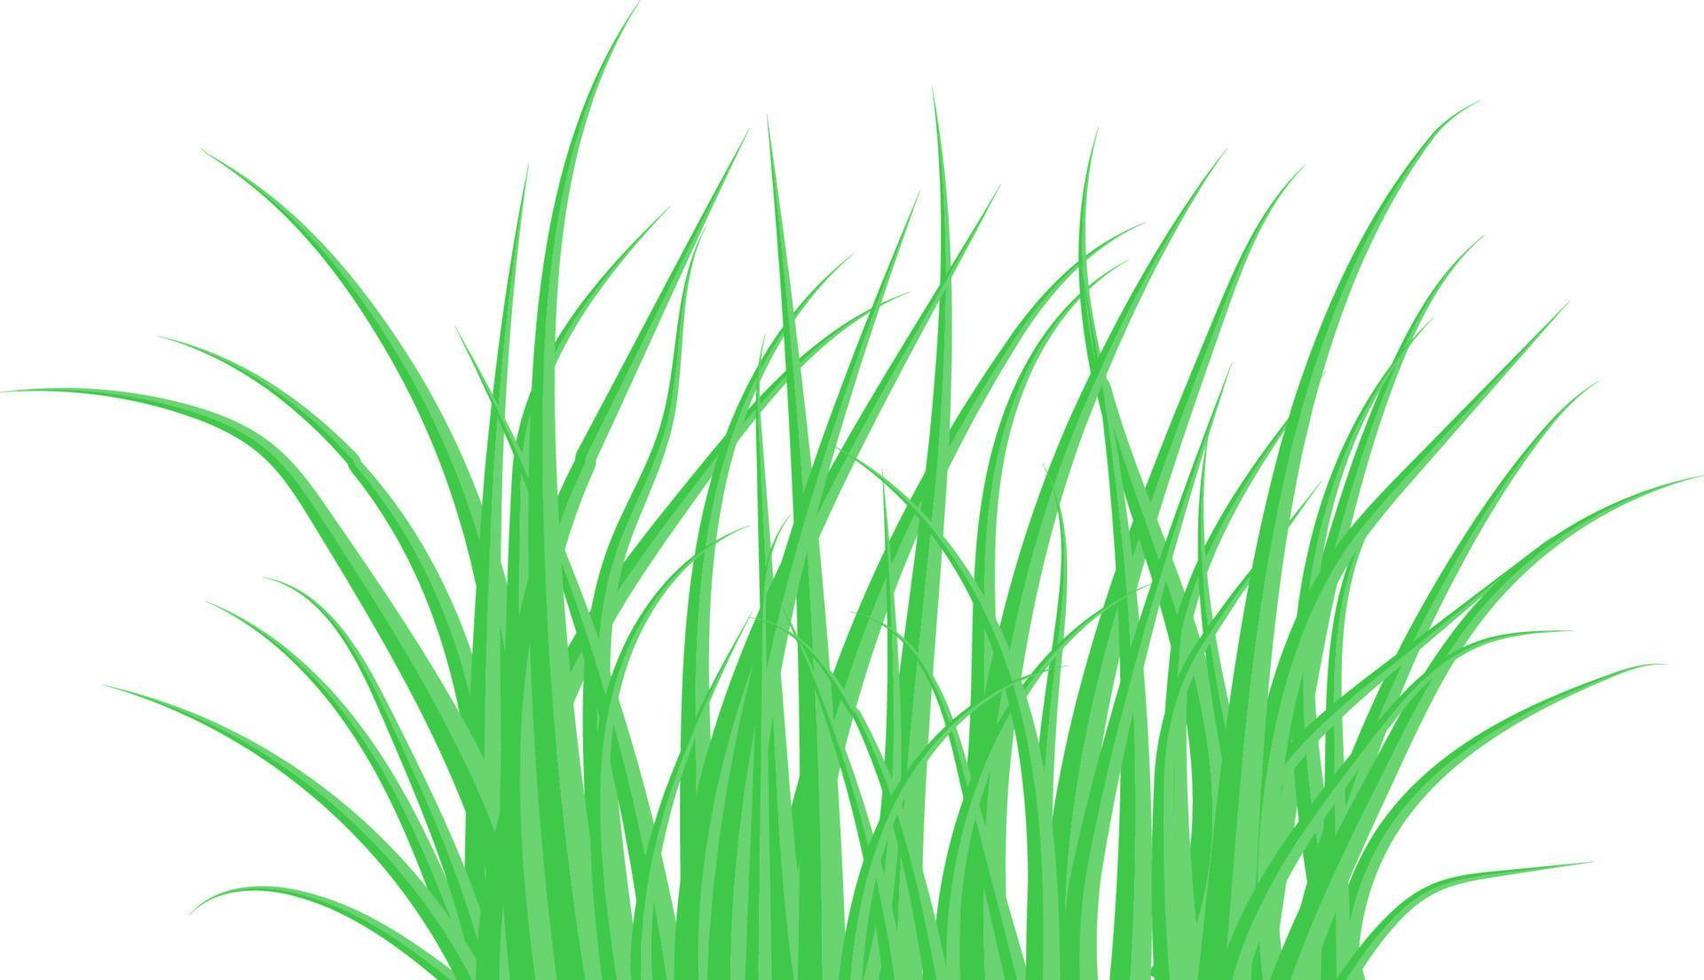 grönt gräs. buskgräset. vektor illustration.